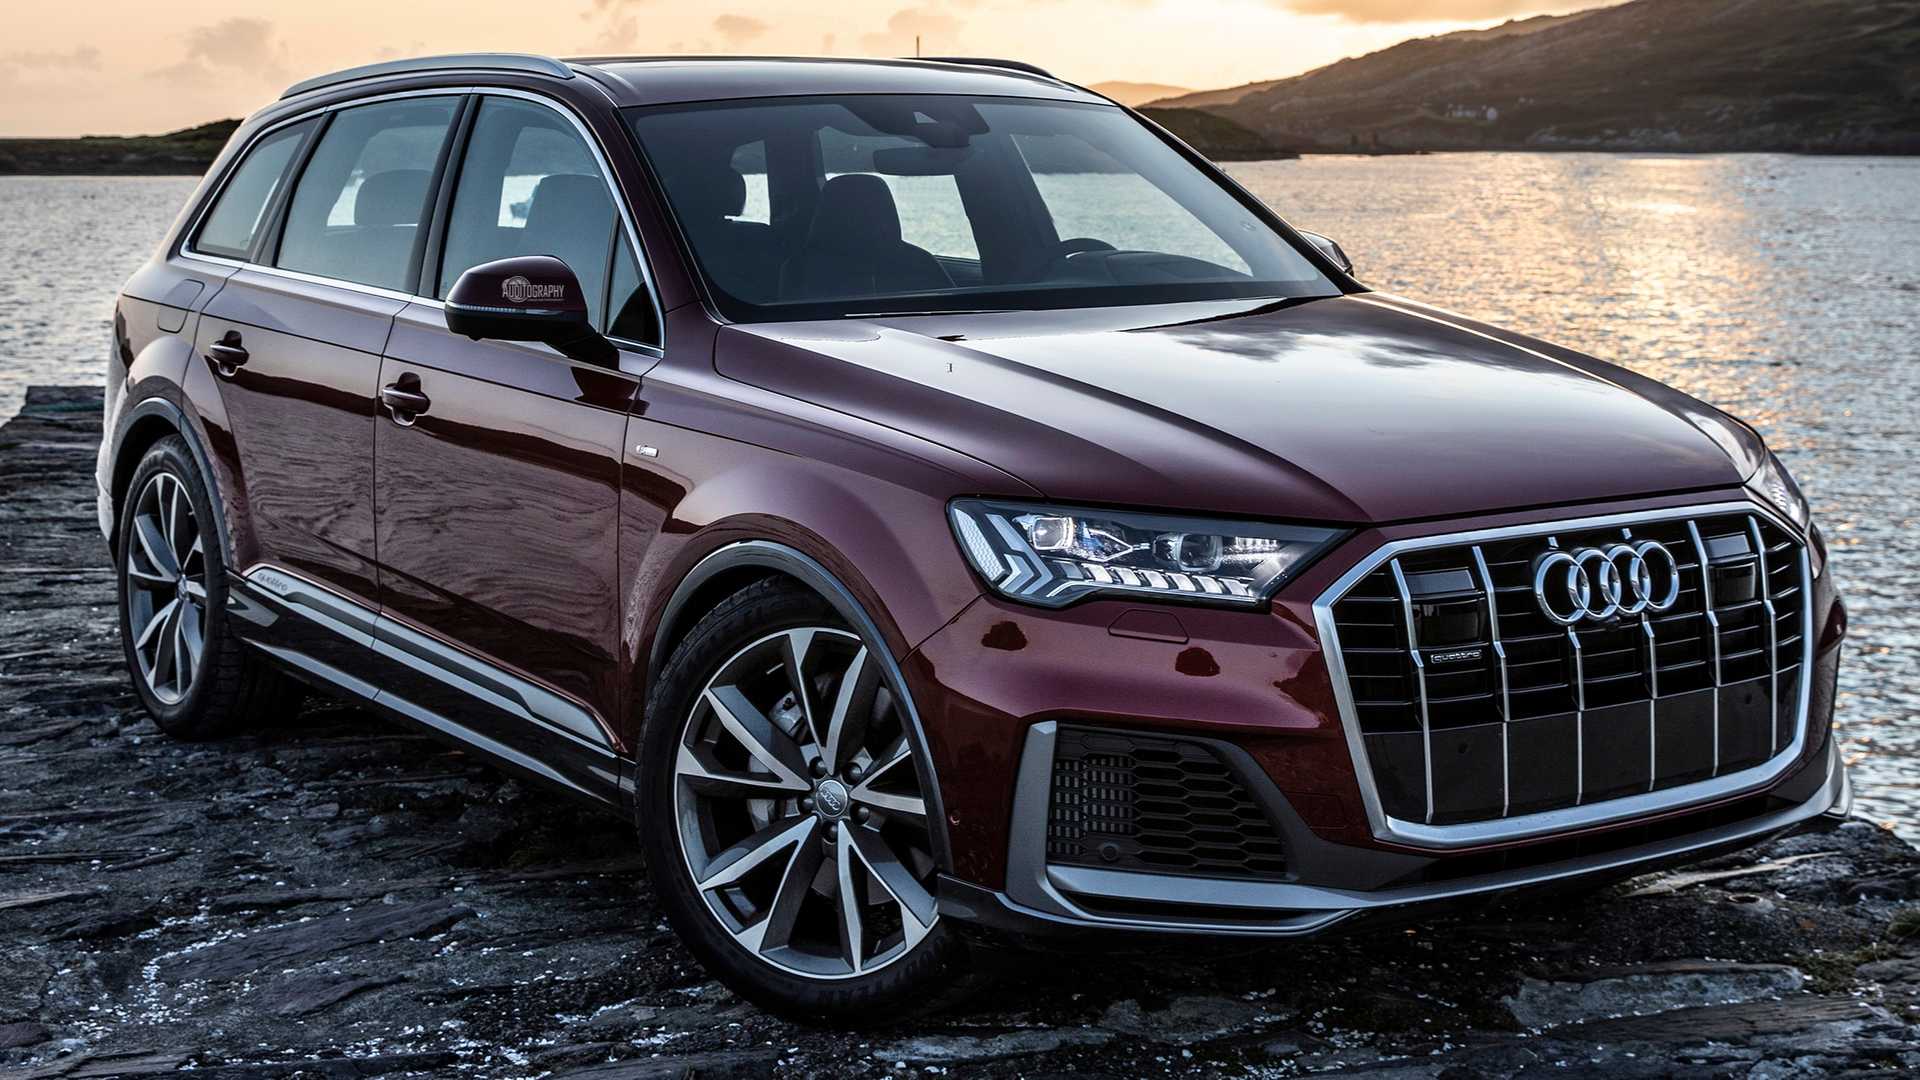 Audi Q7 Rental Rates Dubai